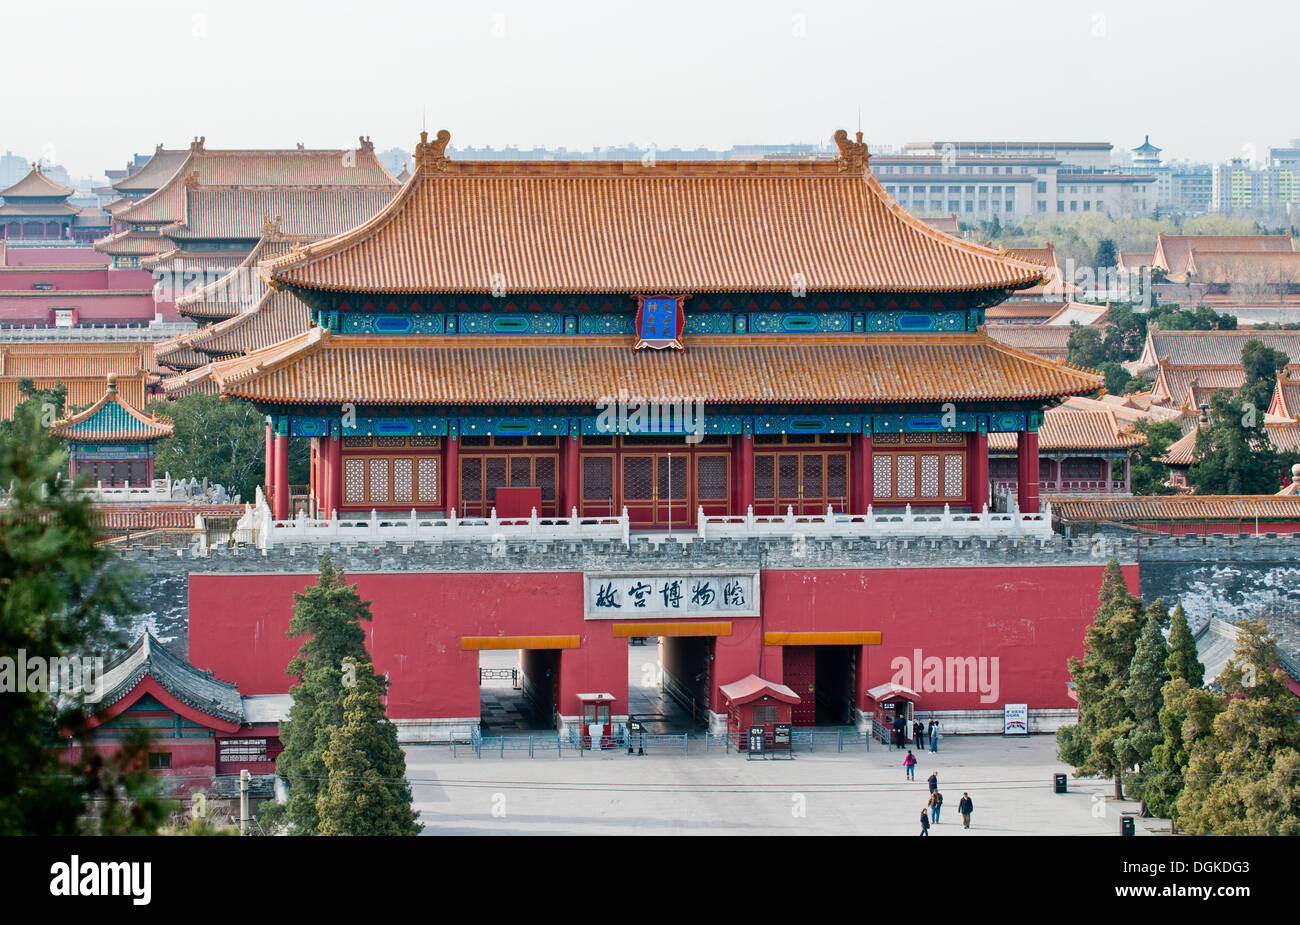 Tor der göttlichen könnte oder Tor der göttlichen Fähigkeiten, nördliche Tor der verbotenen Stadt in Peking, China, vom Jingshan Park aus gesehen Stockfoto